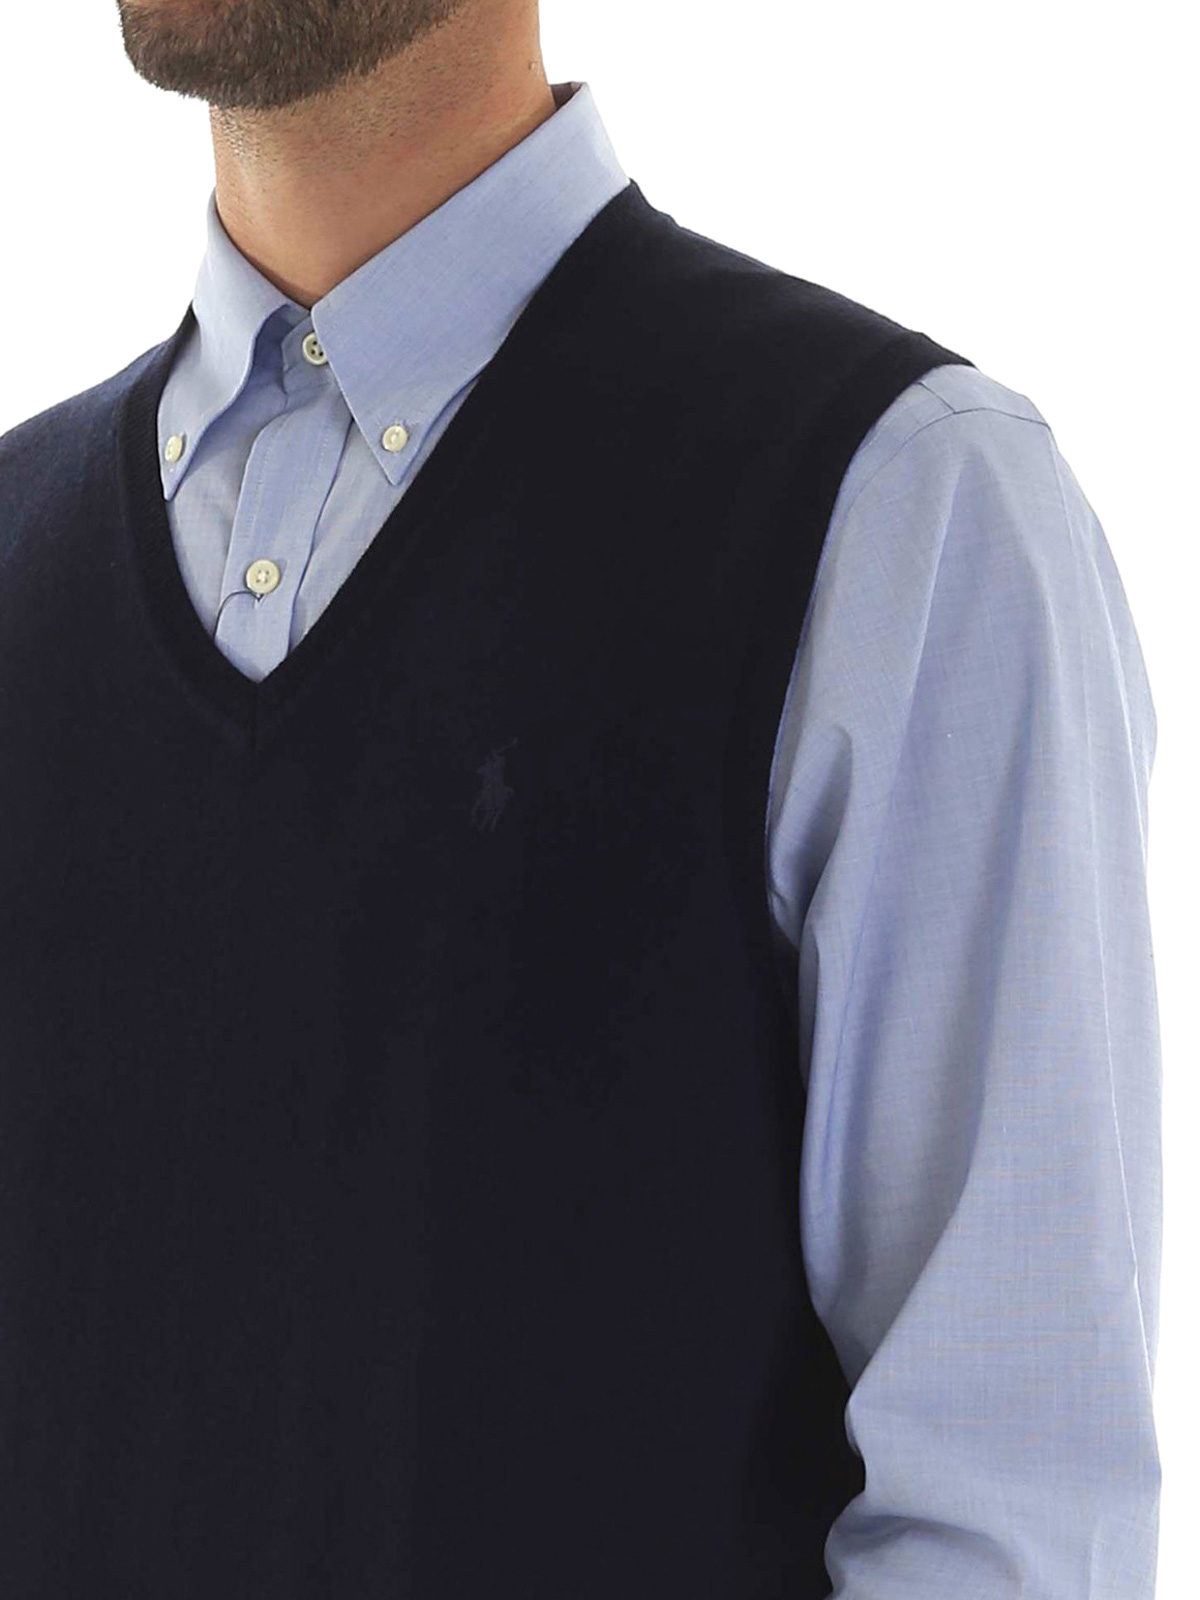 Vests Polo Ralph Lauren - Merino wool sleeveless sweater - 710758369002